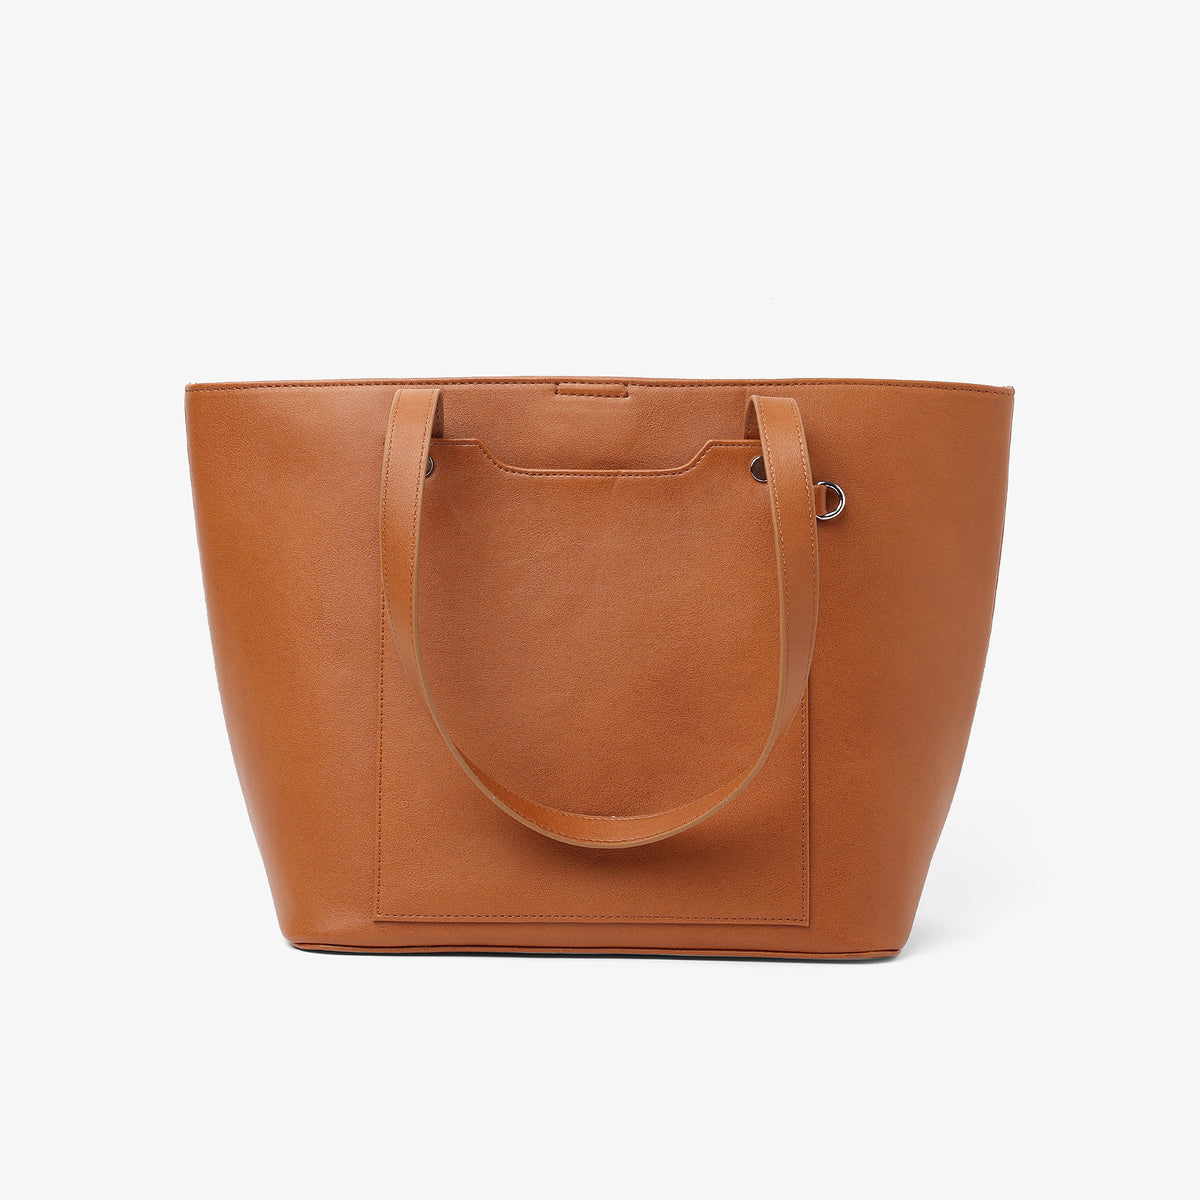 Personalised Classic Tote Bag - Tan